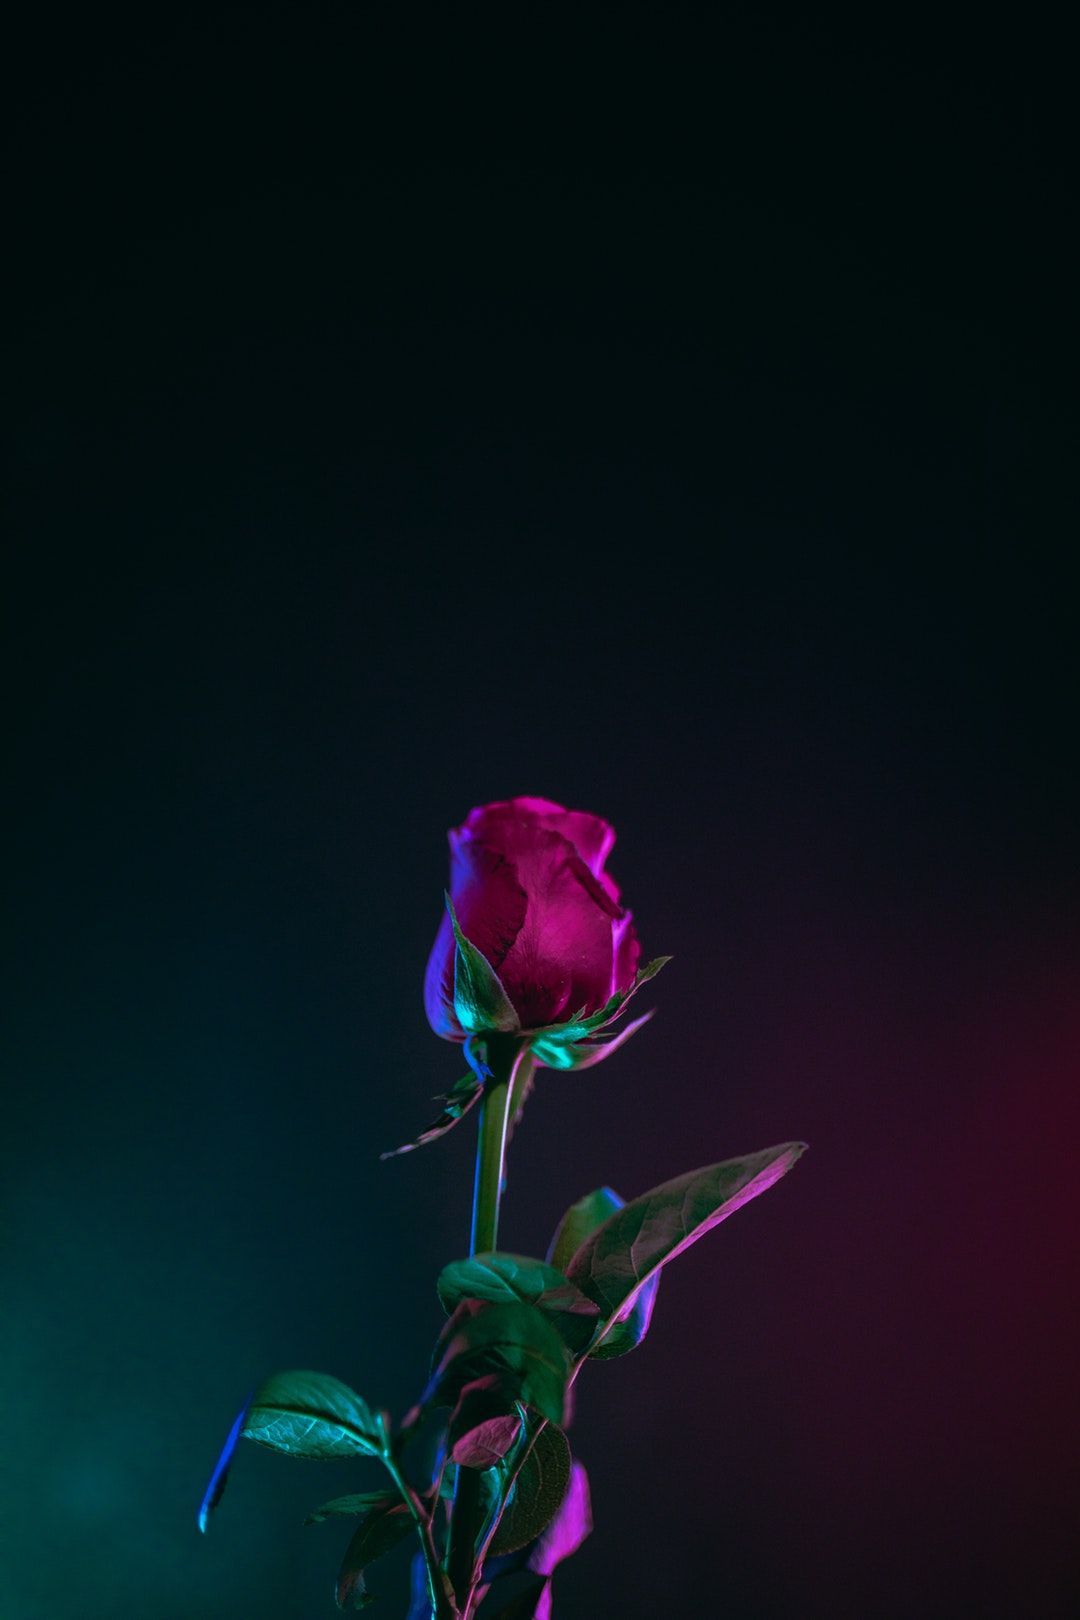 Hoa hồng tía là một símbol cho tình yêu và sự khát khao. Từng đường nét trên cánh hoa giúp thể hiện sự đẹp và tinh tế của nó. Nếu bạn yêu quý vẻ đẹp hoa hồng, hãy xem bức ảnh liên quan đến từ khoá \